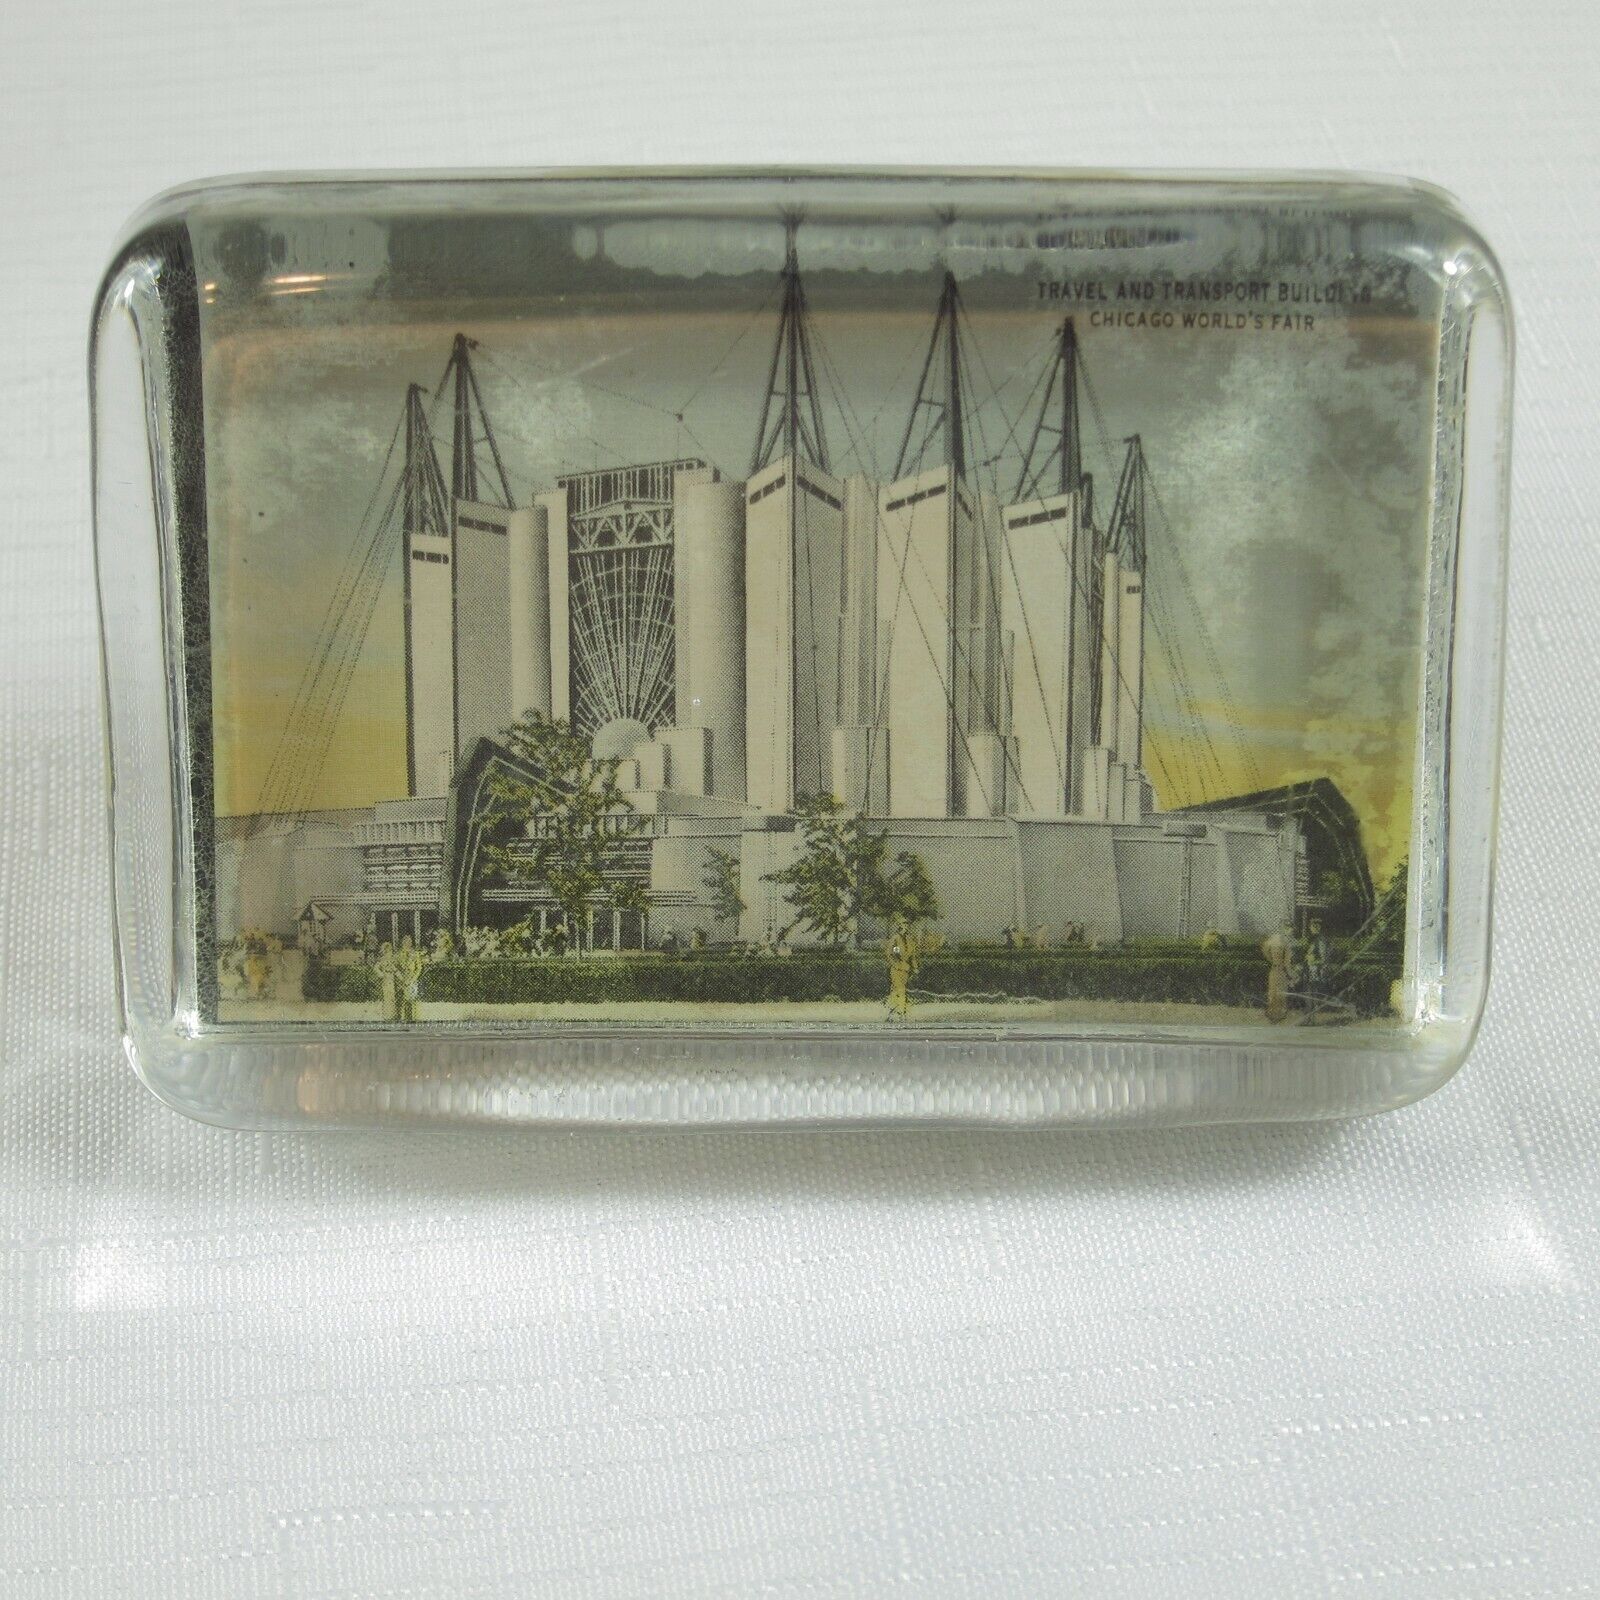 1933-1934 Chicago Worlds Fair Souvenir Glass Paperweight Travel & Transportation